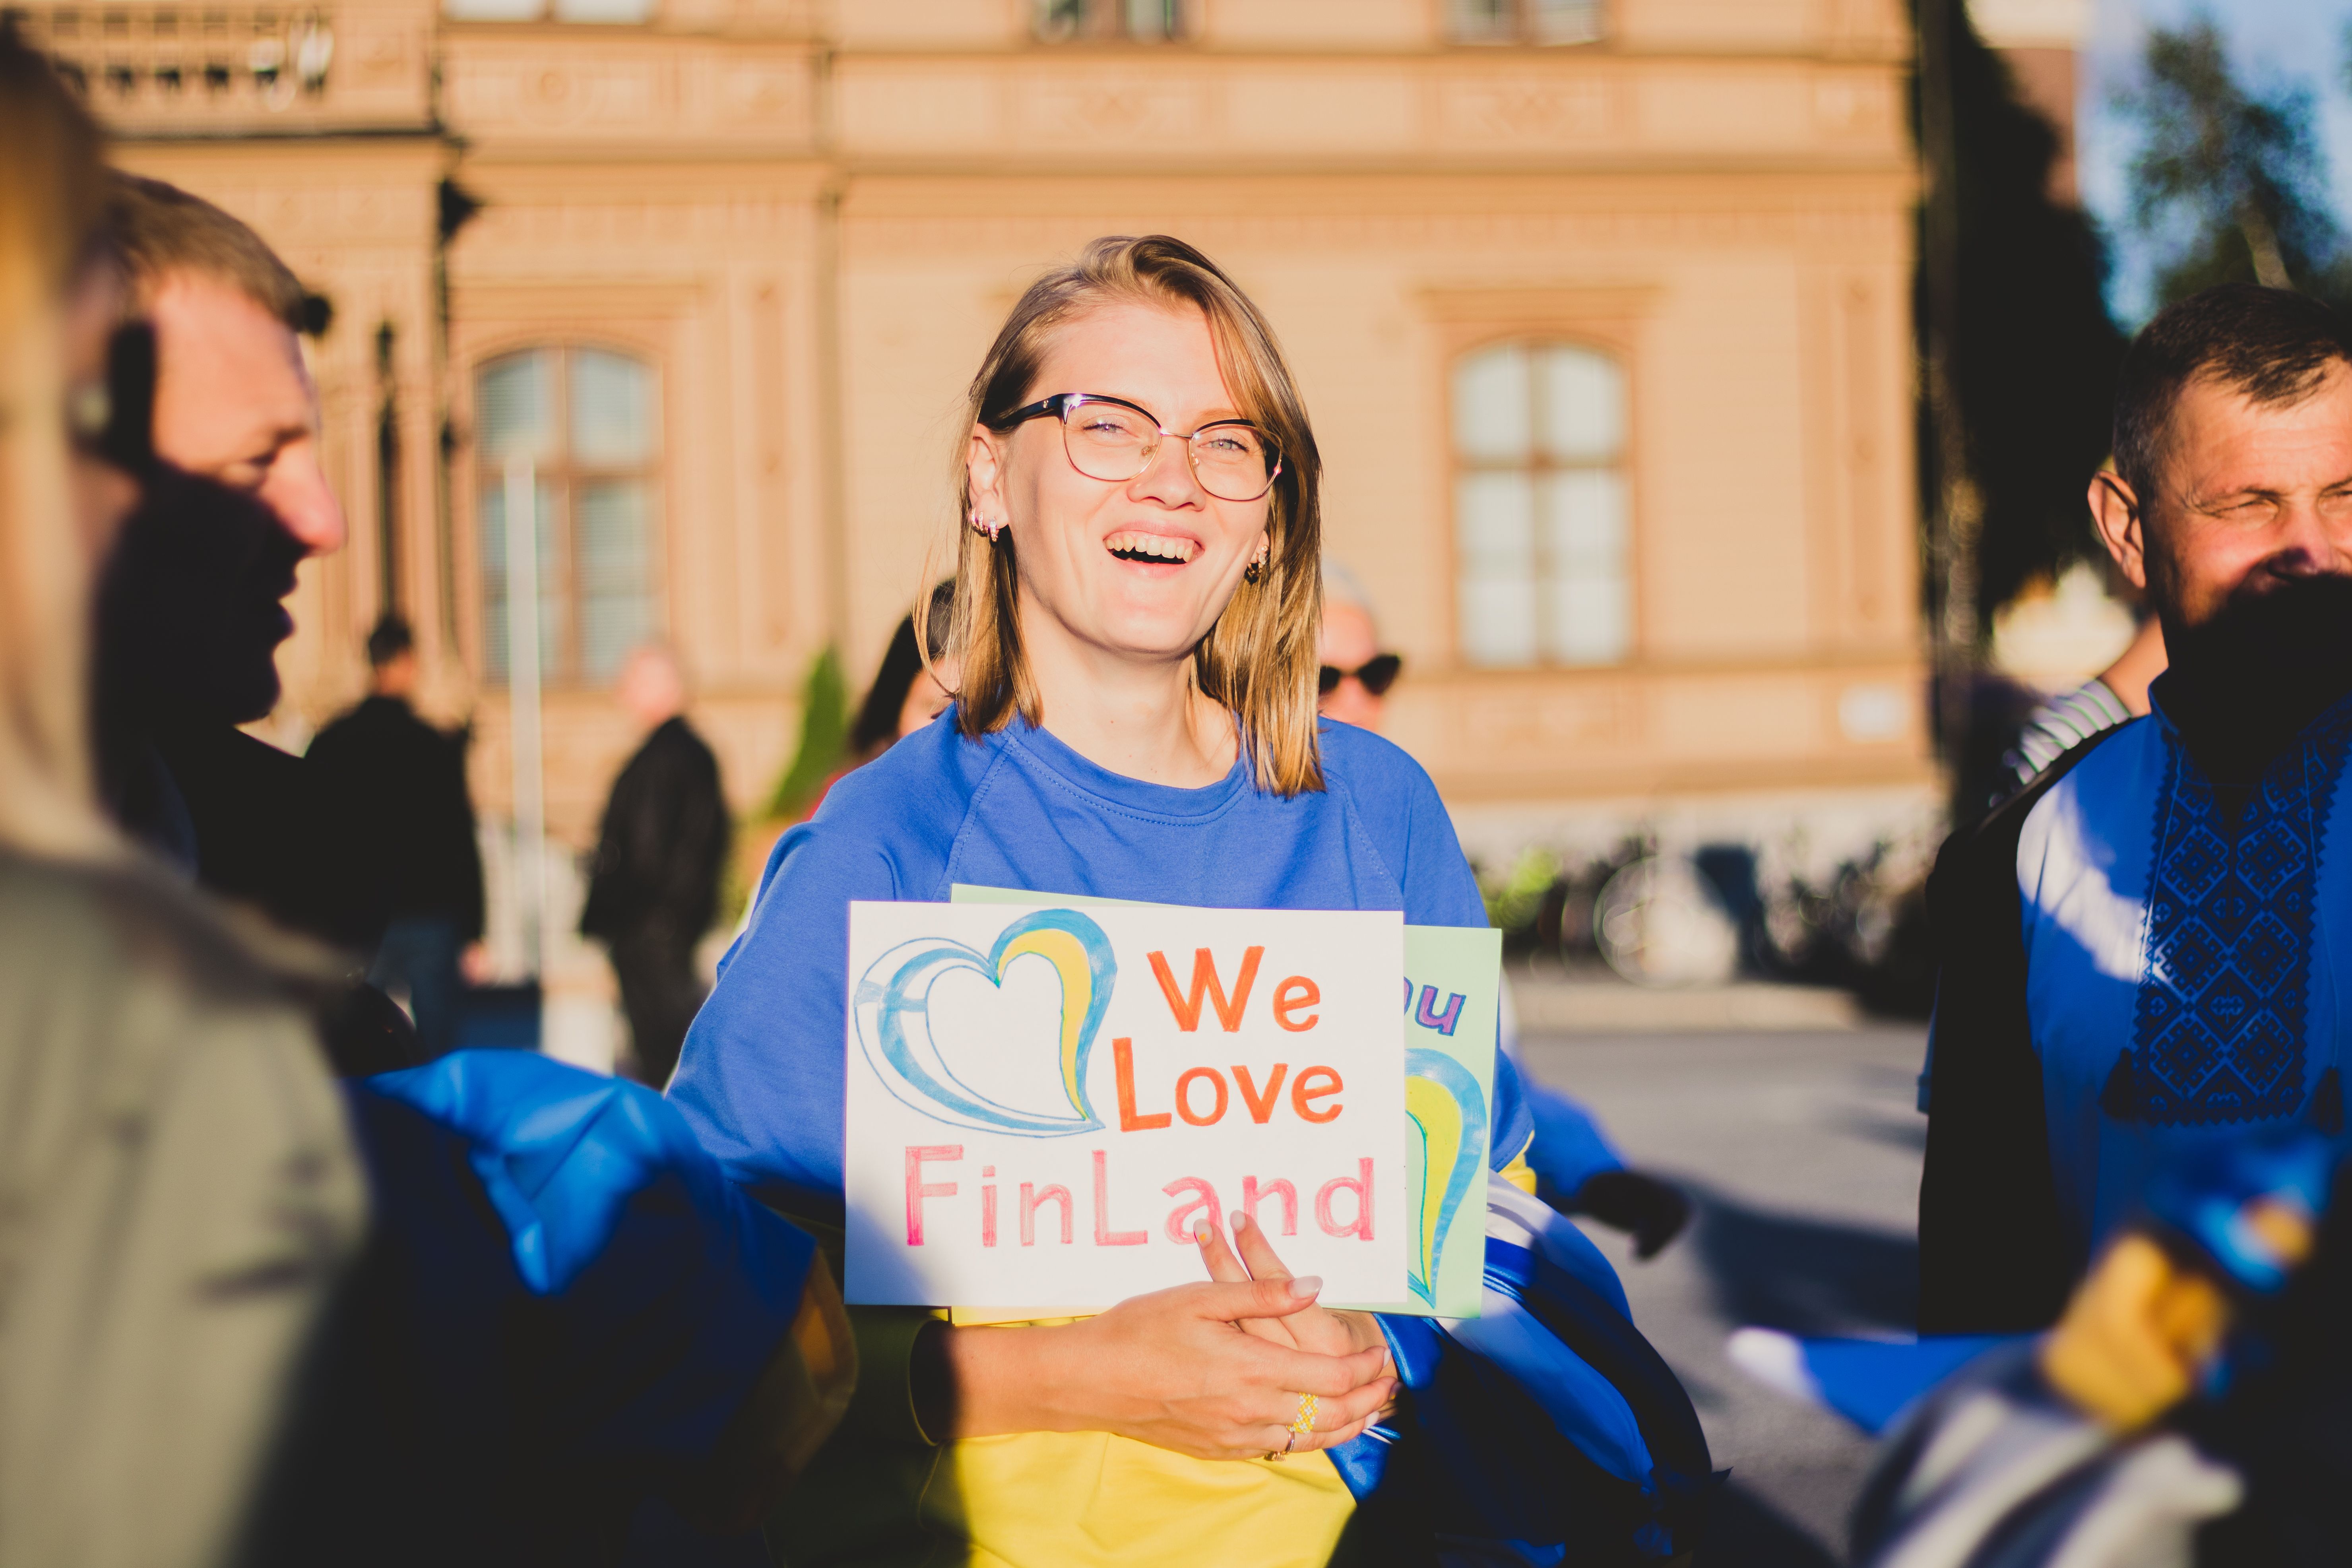 Самое важное уважать правила страны, куда ты переехал  украинка рассказала о жизни в Финляндии - Закордон